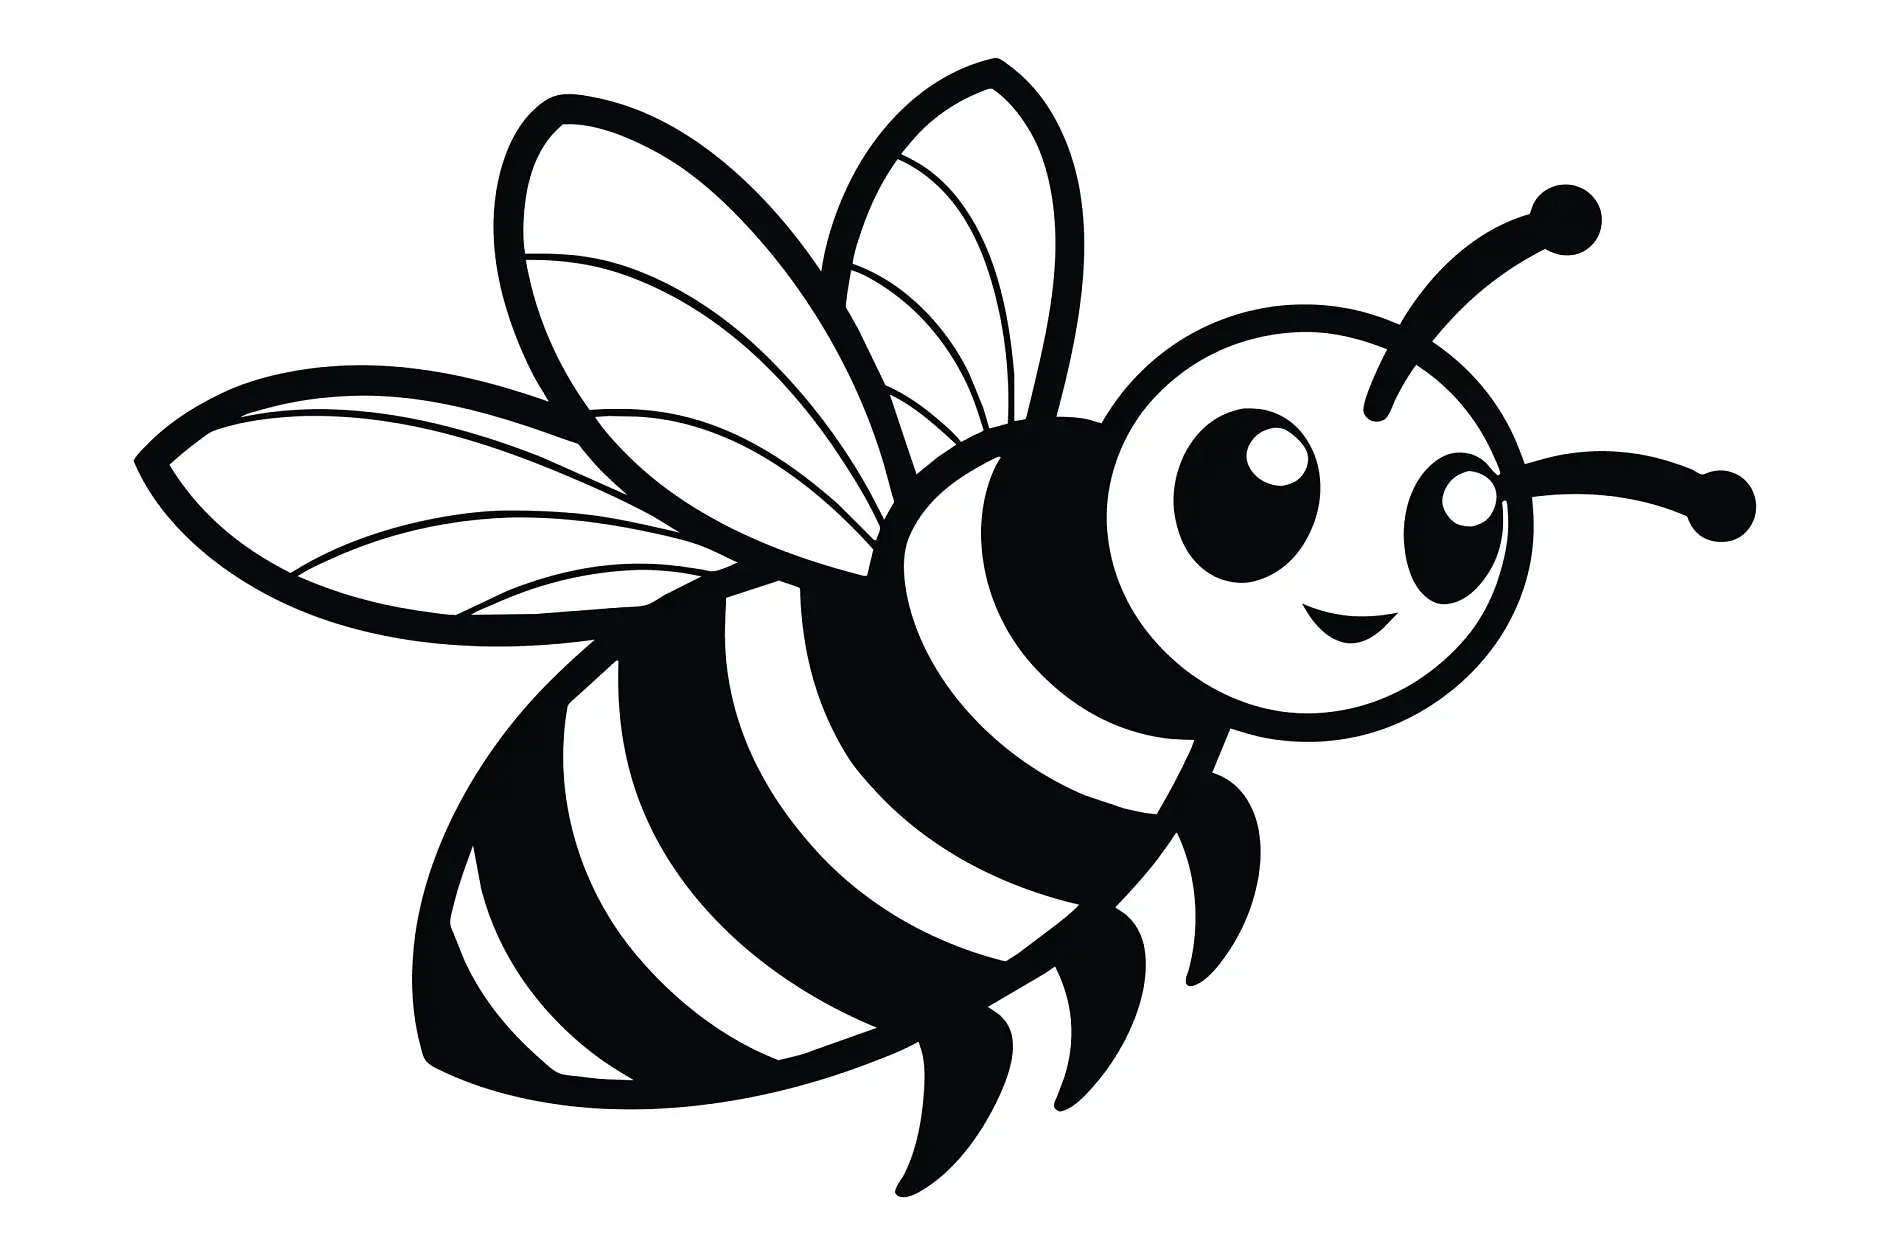 Ausmalbild lächelnde Biene im Flug mit gestreiftem Körper und Flügeln